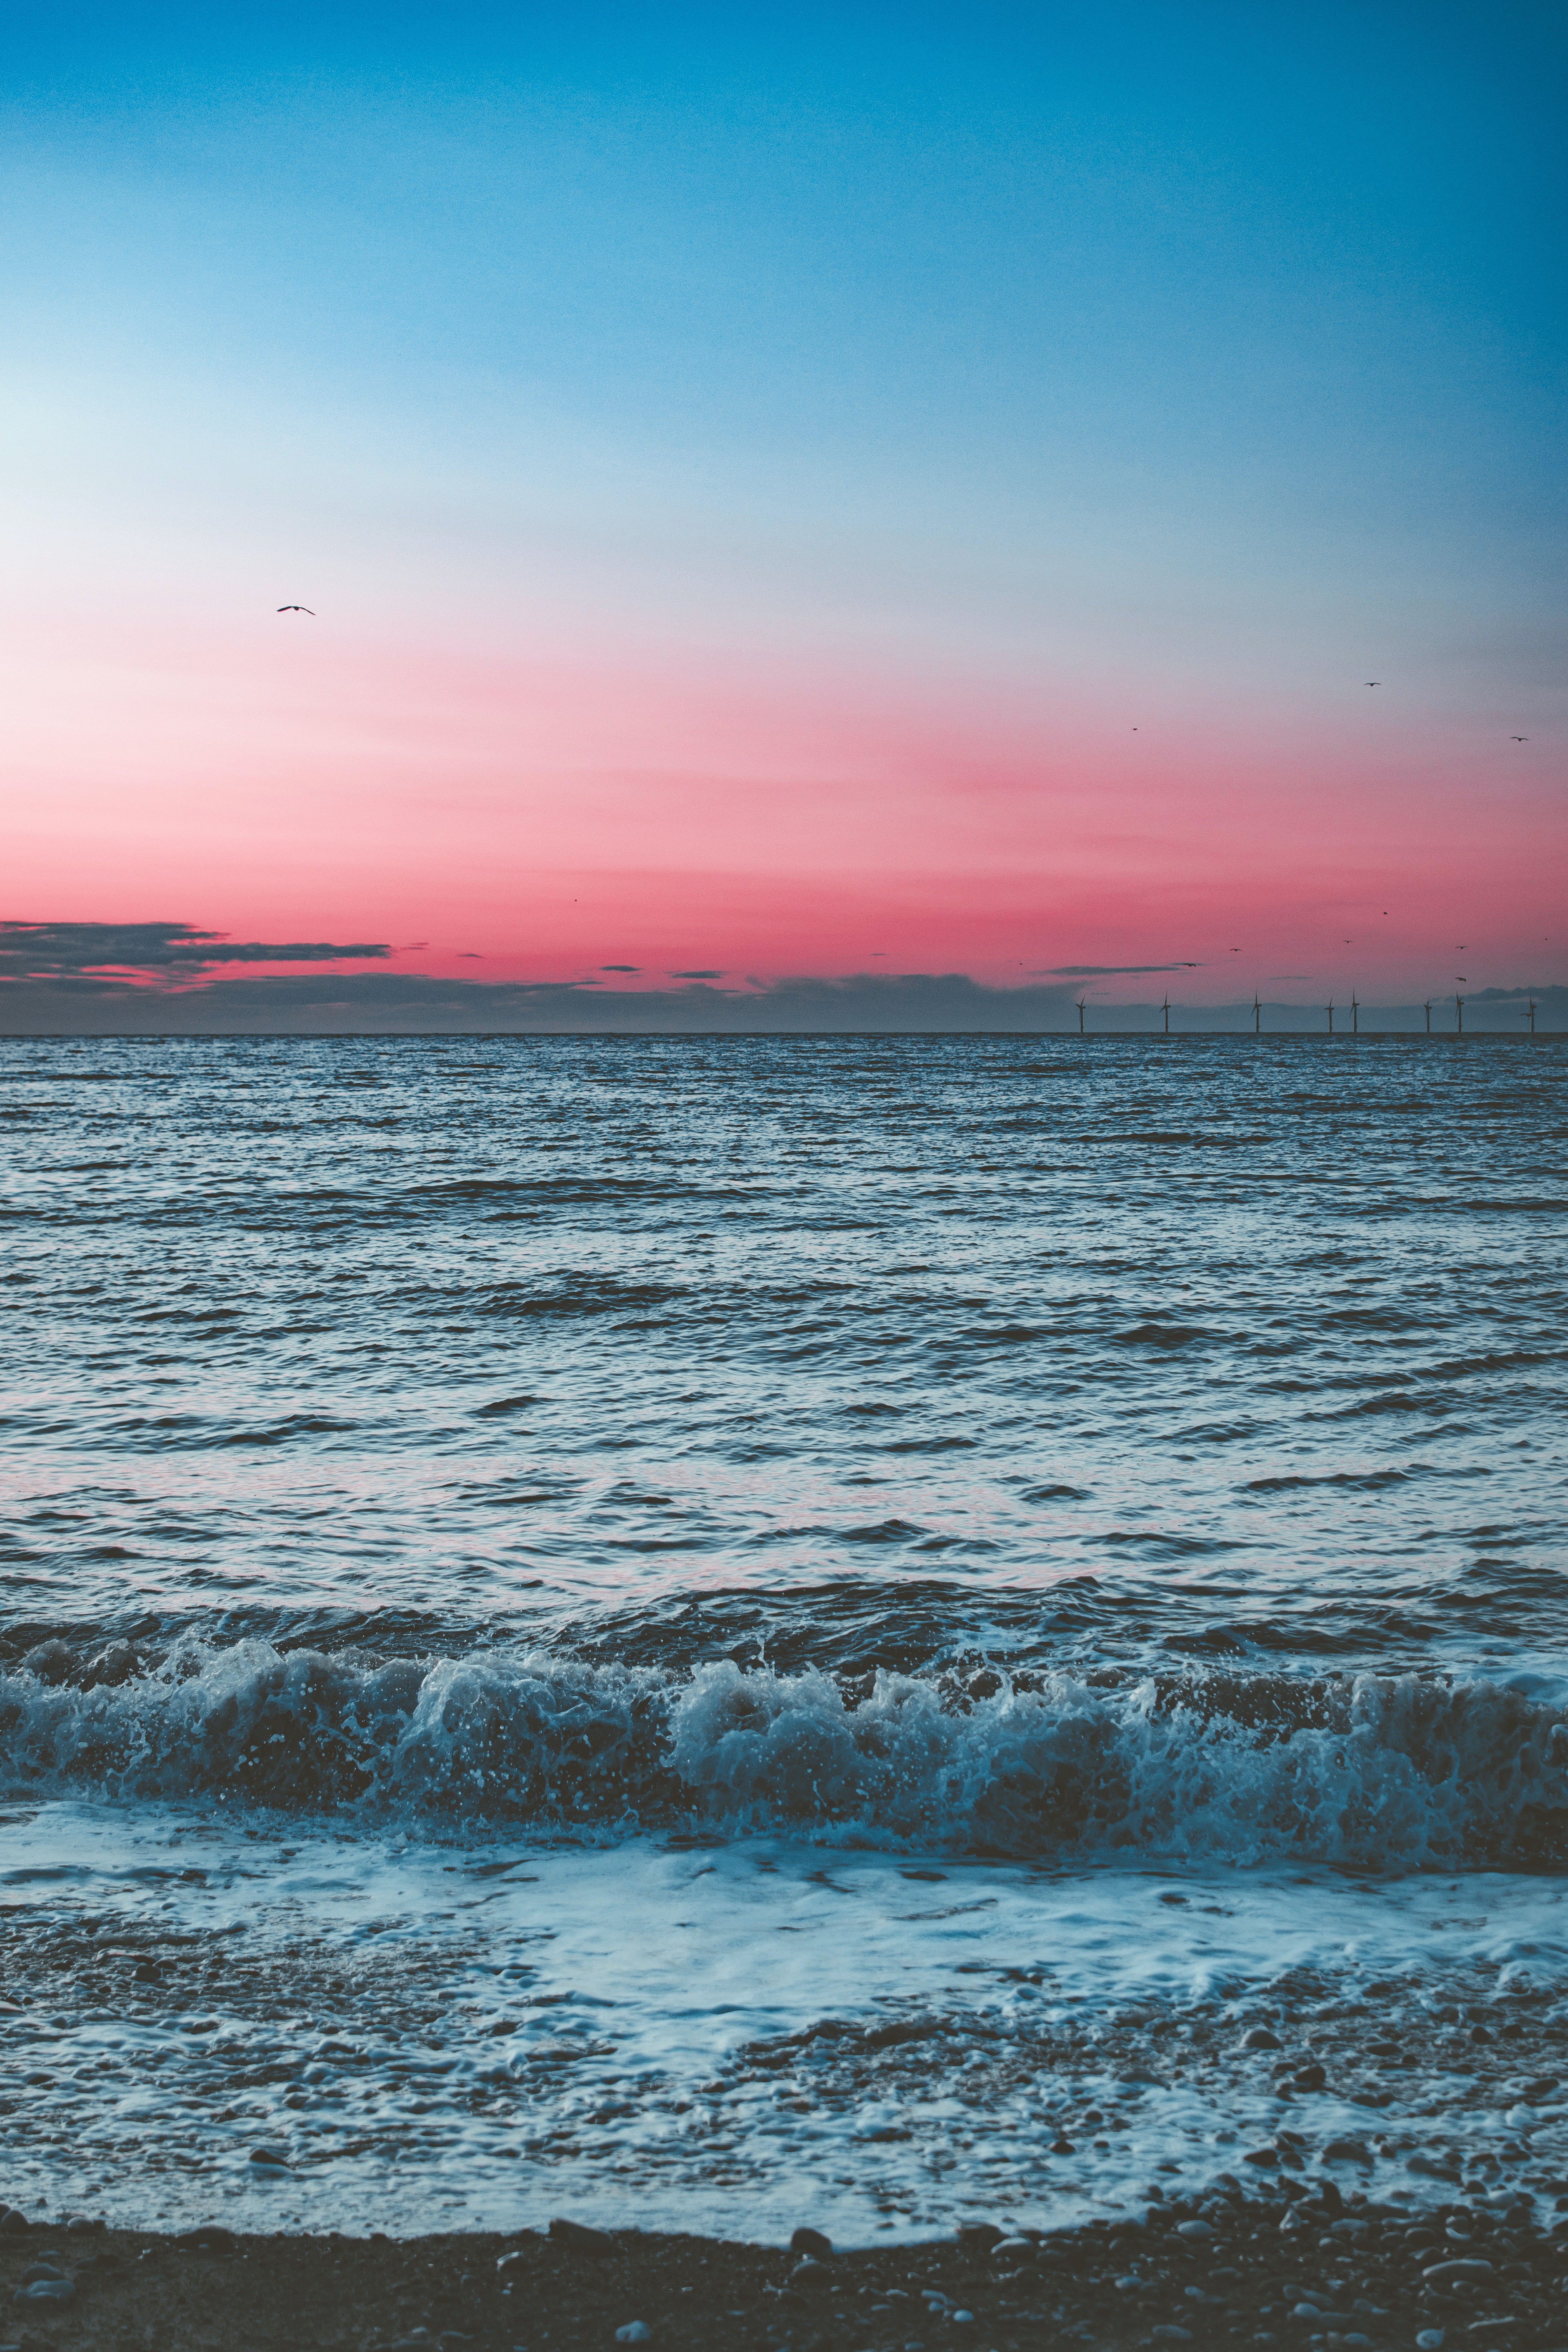 ocean sunset iphone wallpaper